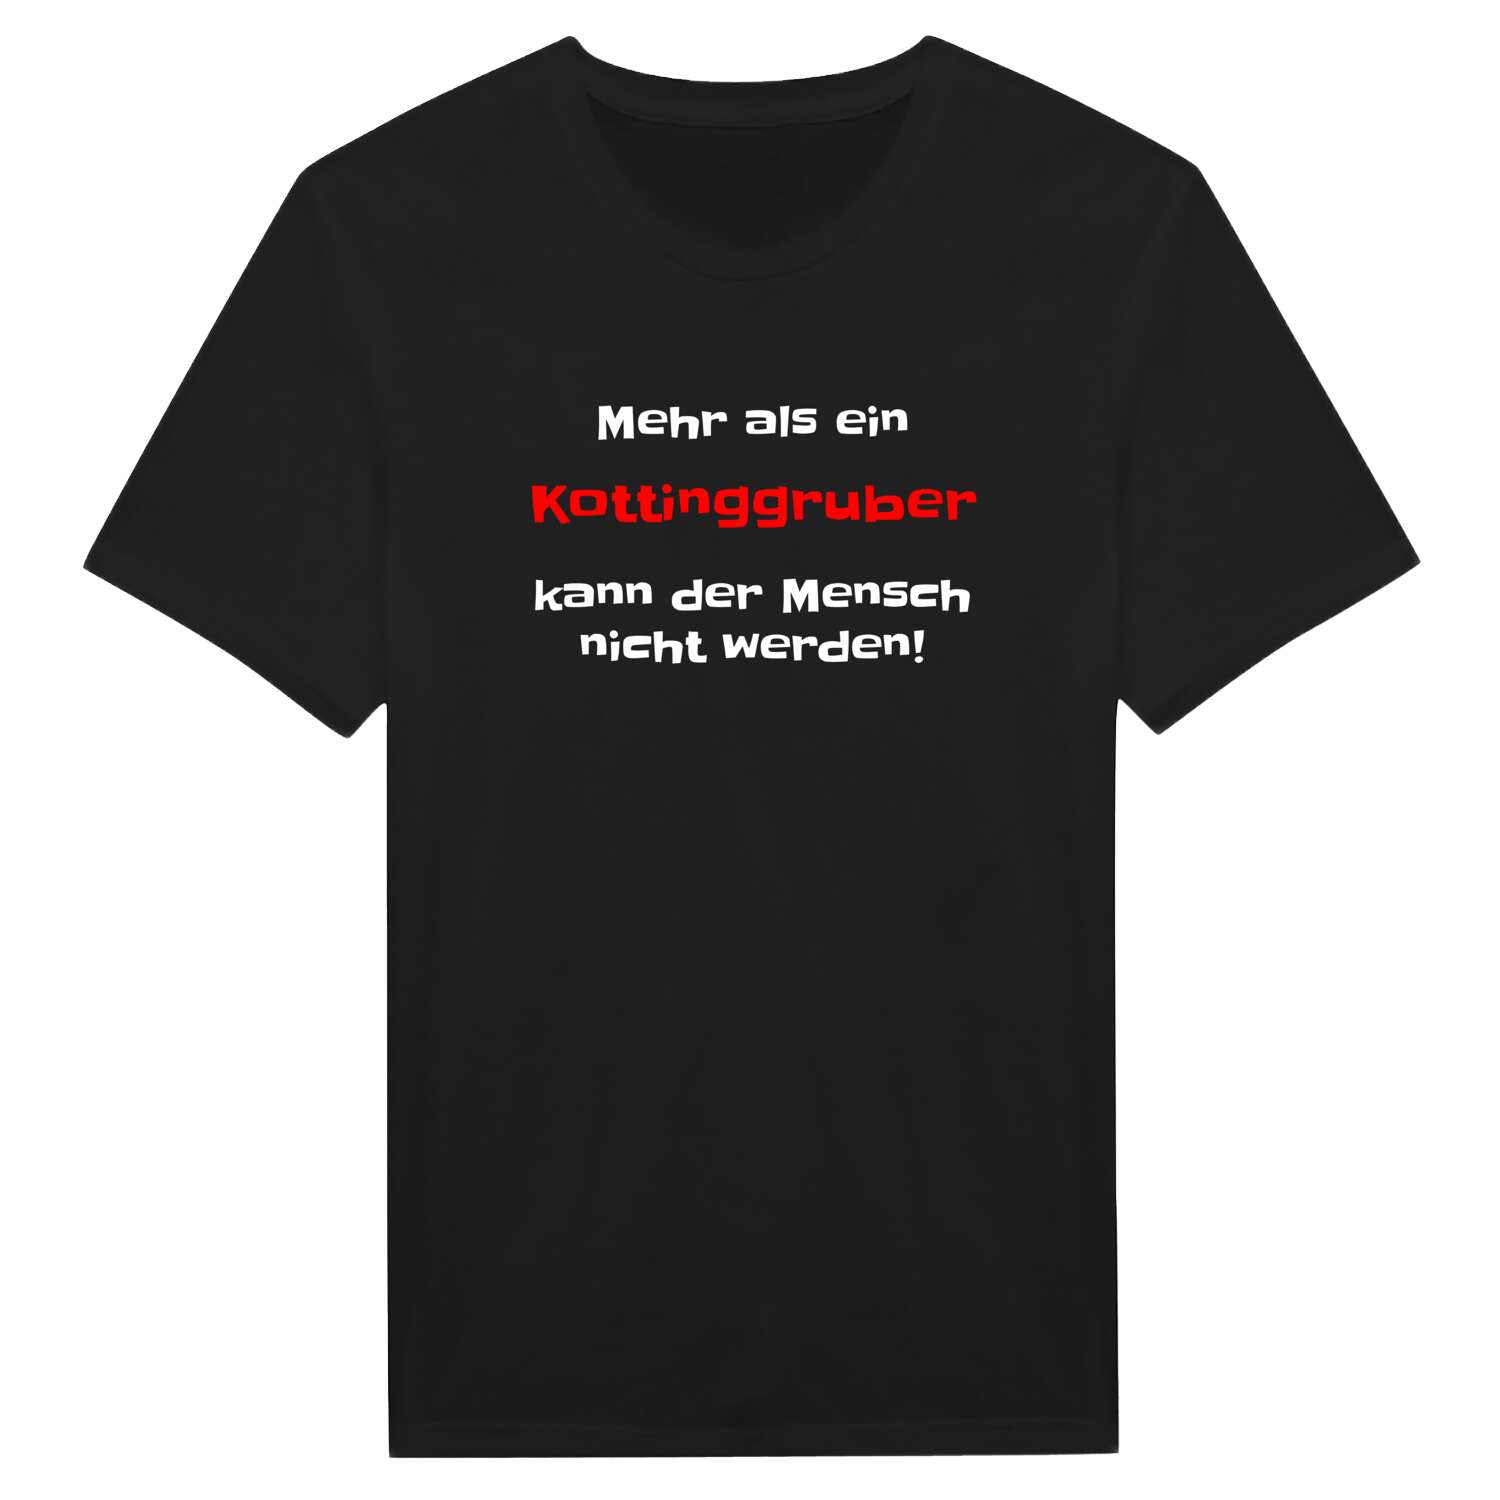 Kottinggrub T-Shirt »Mehr als ein«